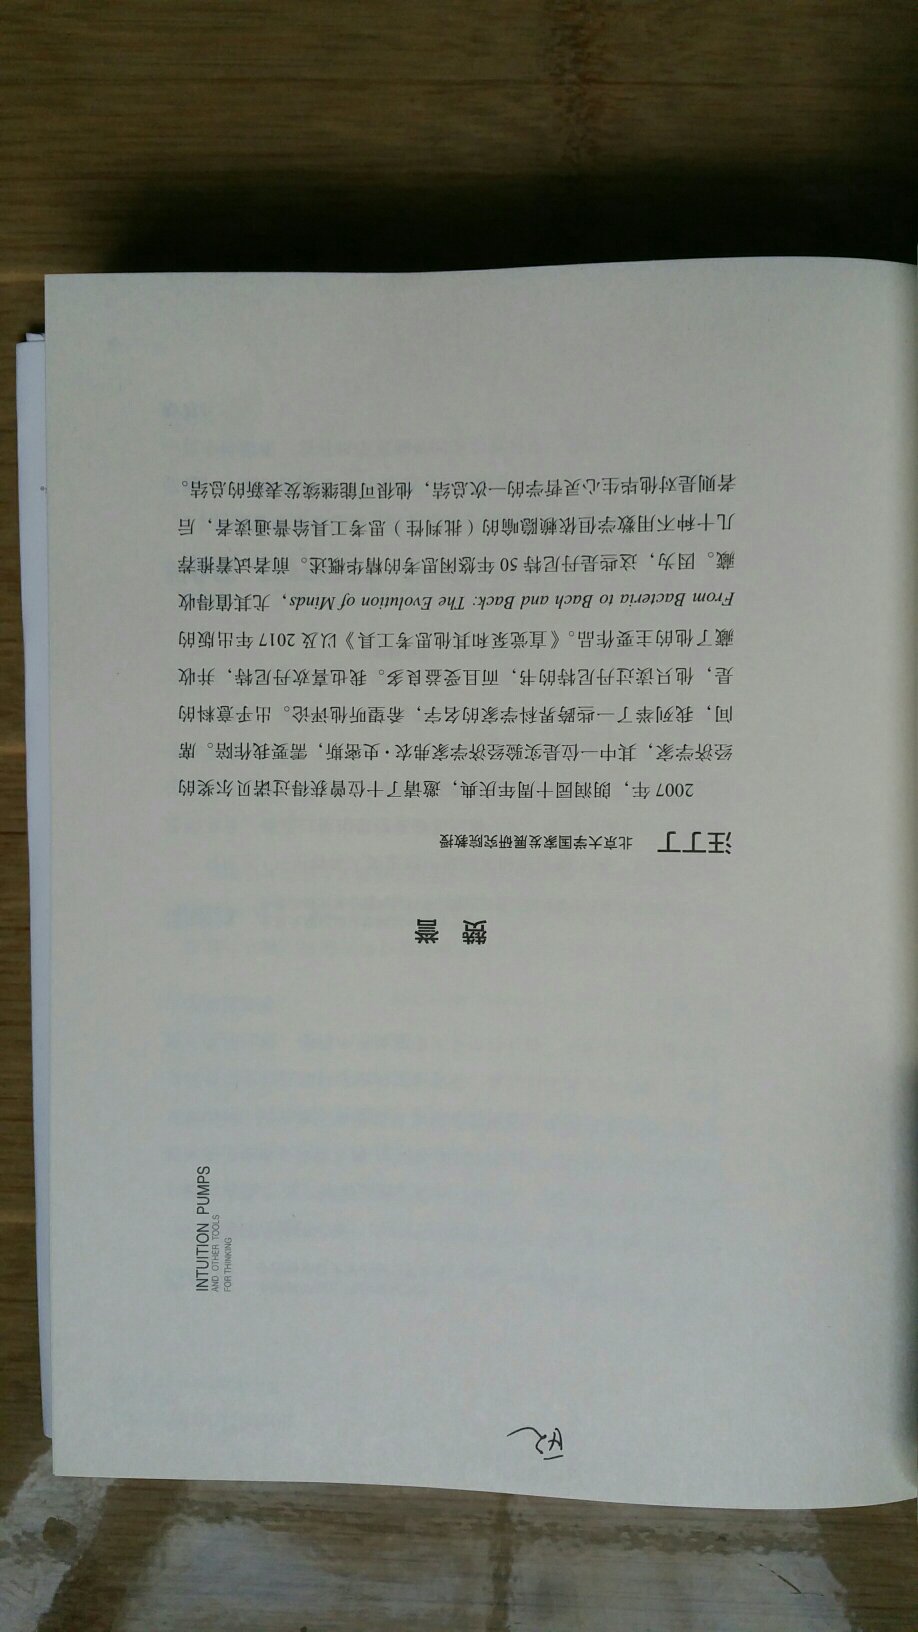 我讨厌湛庐出版的书，印刷质量差，原版的页码没标上，赞誉一大堆。道金斯“这是我读过的最好的一本书”，与书中p059“爱就一个字”一样是“深马”，什么都沒说。当然要深深感谢湛庐让我可以可中文版！更大期望是《达尔文的危险观念》也译-下吧！